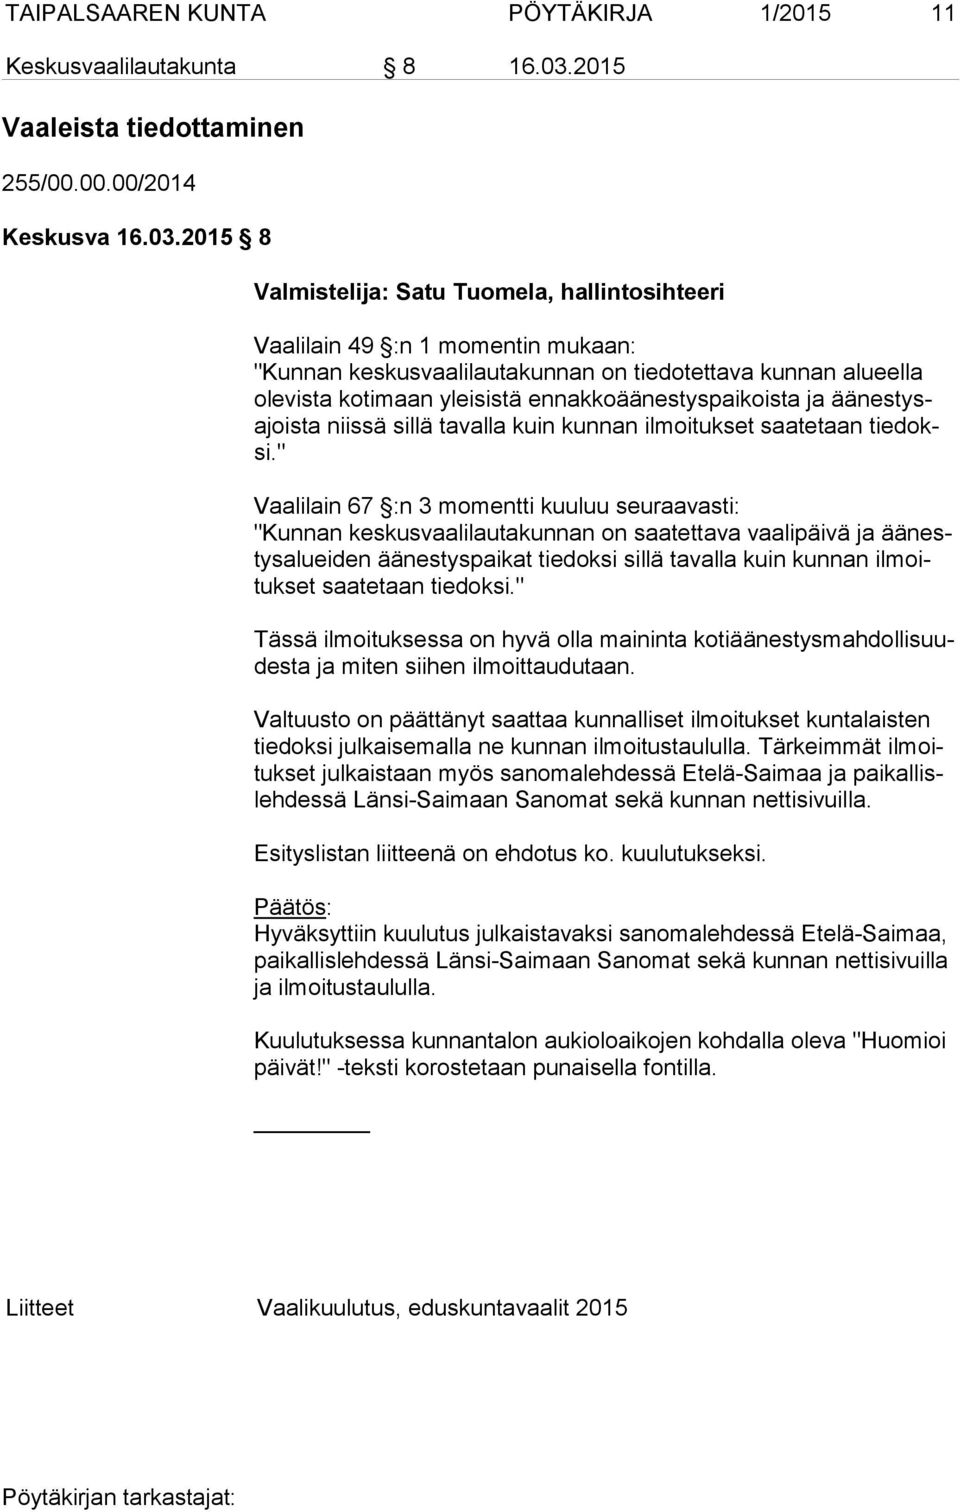 2015 8 Valmistelija: Satu Tuomela, hallintosihteeri Vaalilain 49 :n 1 momentin mukaan: "Kunnan keskusvaalilautakunnan on tiedotettava kunnan alueella ole vis ta kotimaan yleisistä